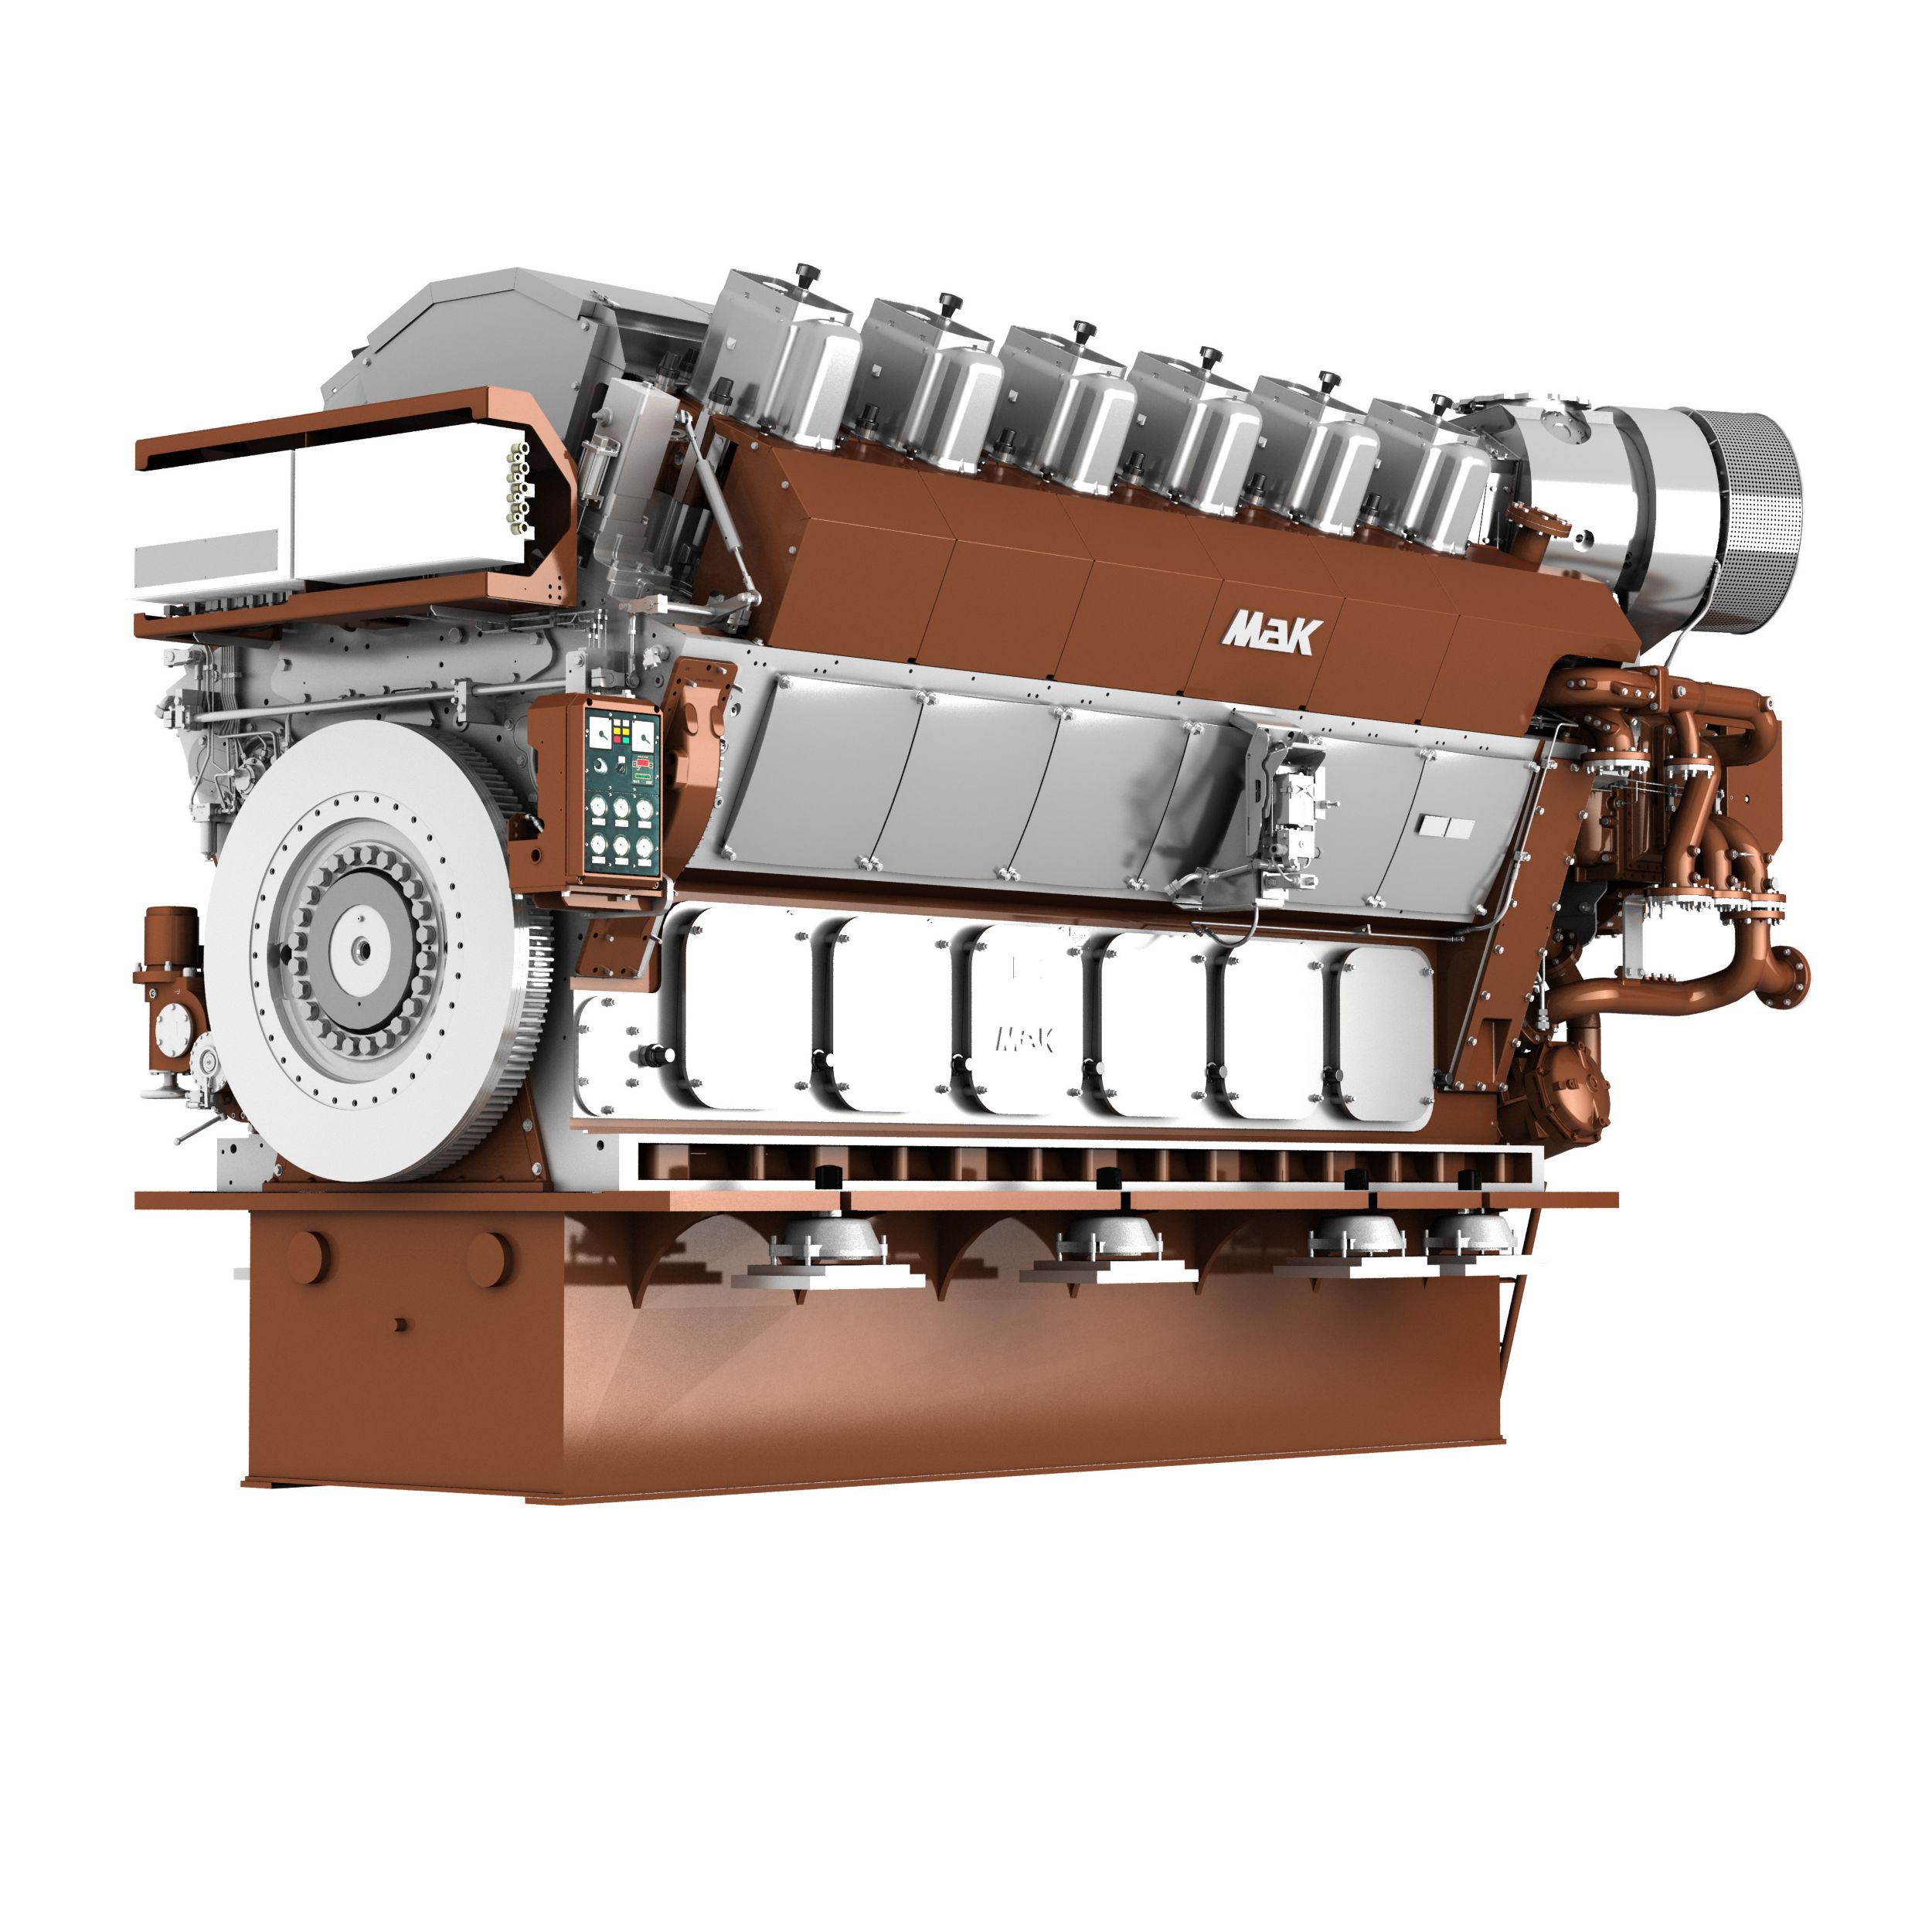 Motor de Propulsión VM 32 E